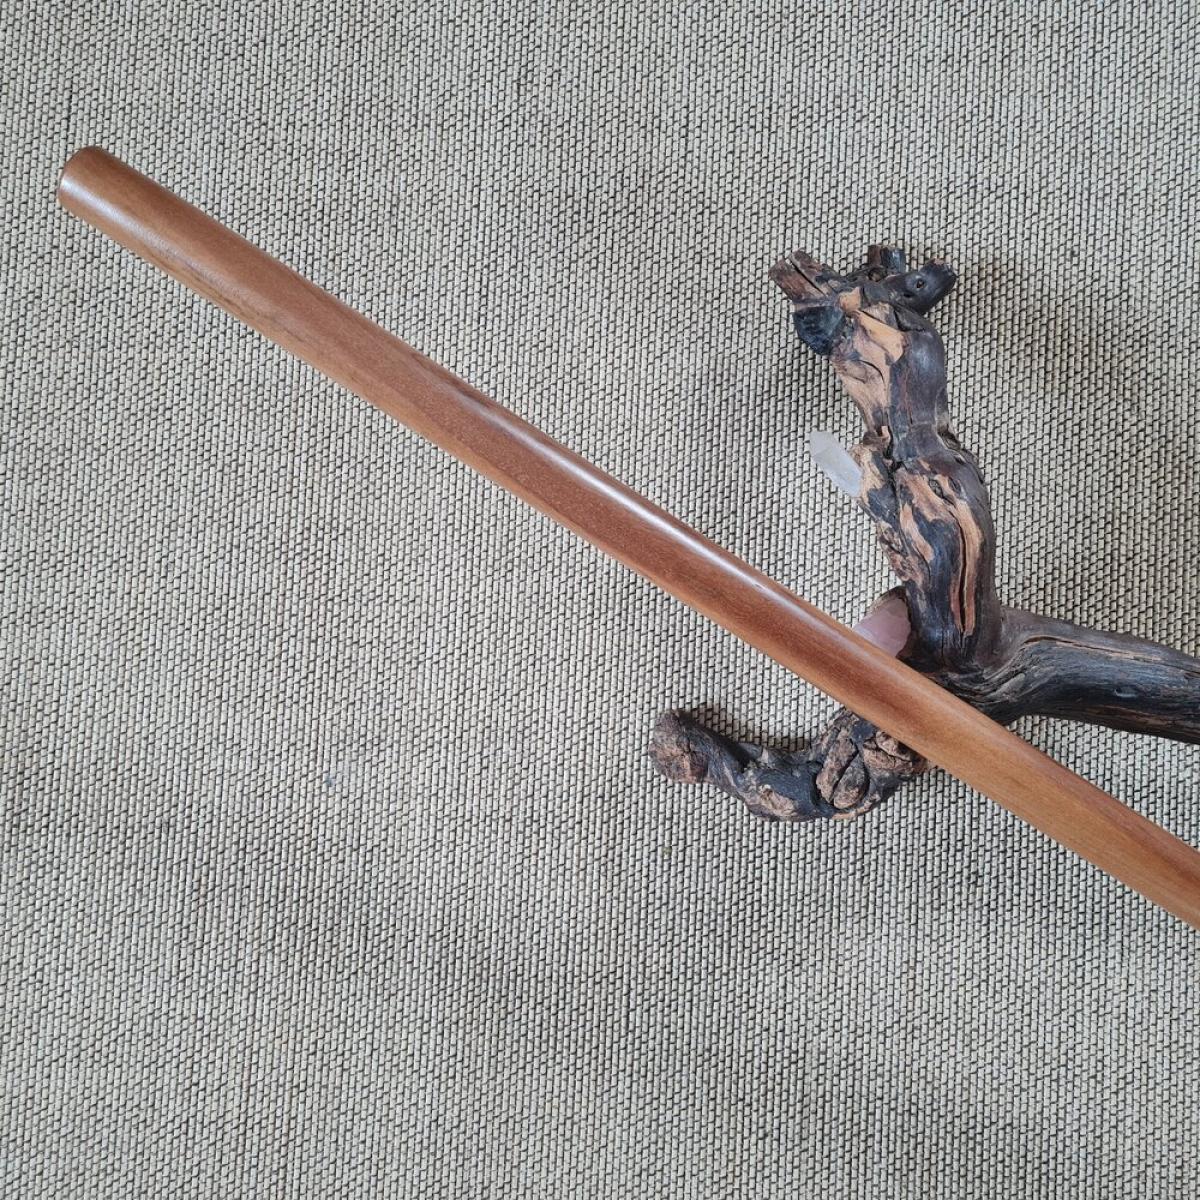 Jo stick made of Supa wood - length 135 cm ➤ www.bokken-shop.de. Suitable for Aikido, Iaido, Jo-Jutsu, Jodo, Bujinkan. Your Budo dealer!